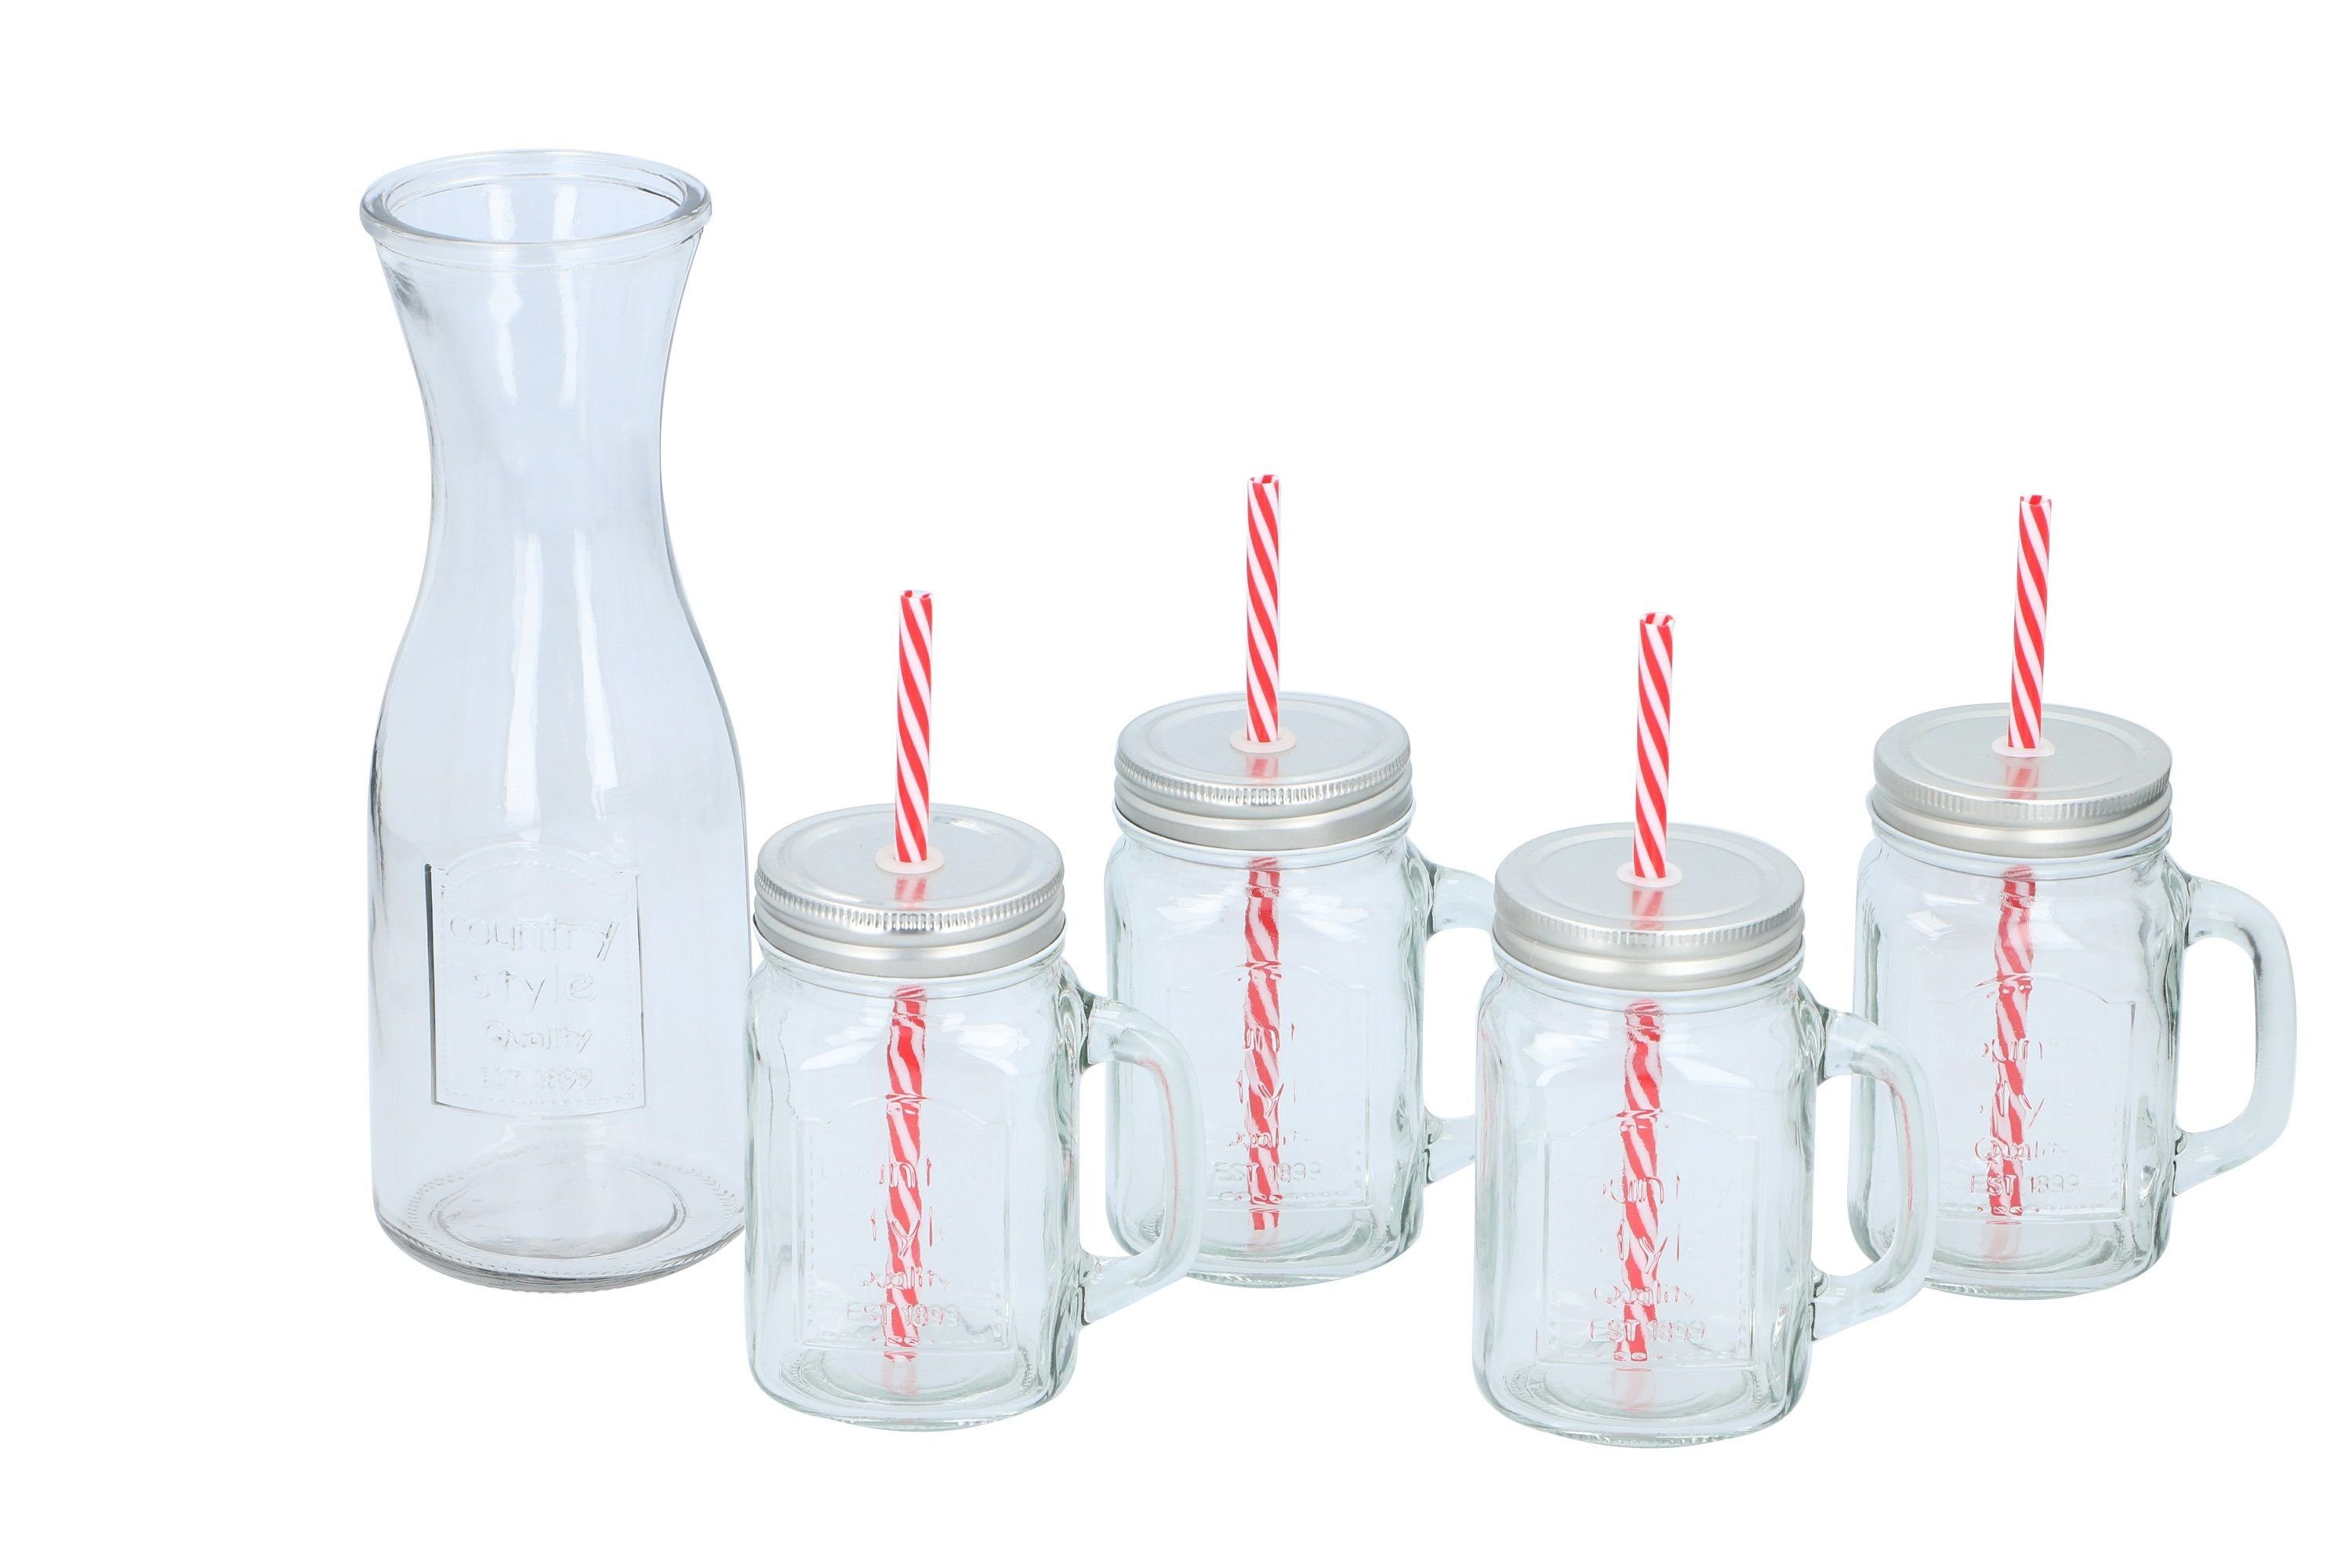 m. Alpina* Trinkglässer Gläser-Set Glas,Metall,Kunststoff Wasserkaraffe,inkl.4tlg. Deckel, Henkel,